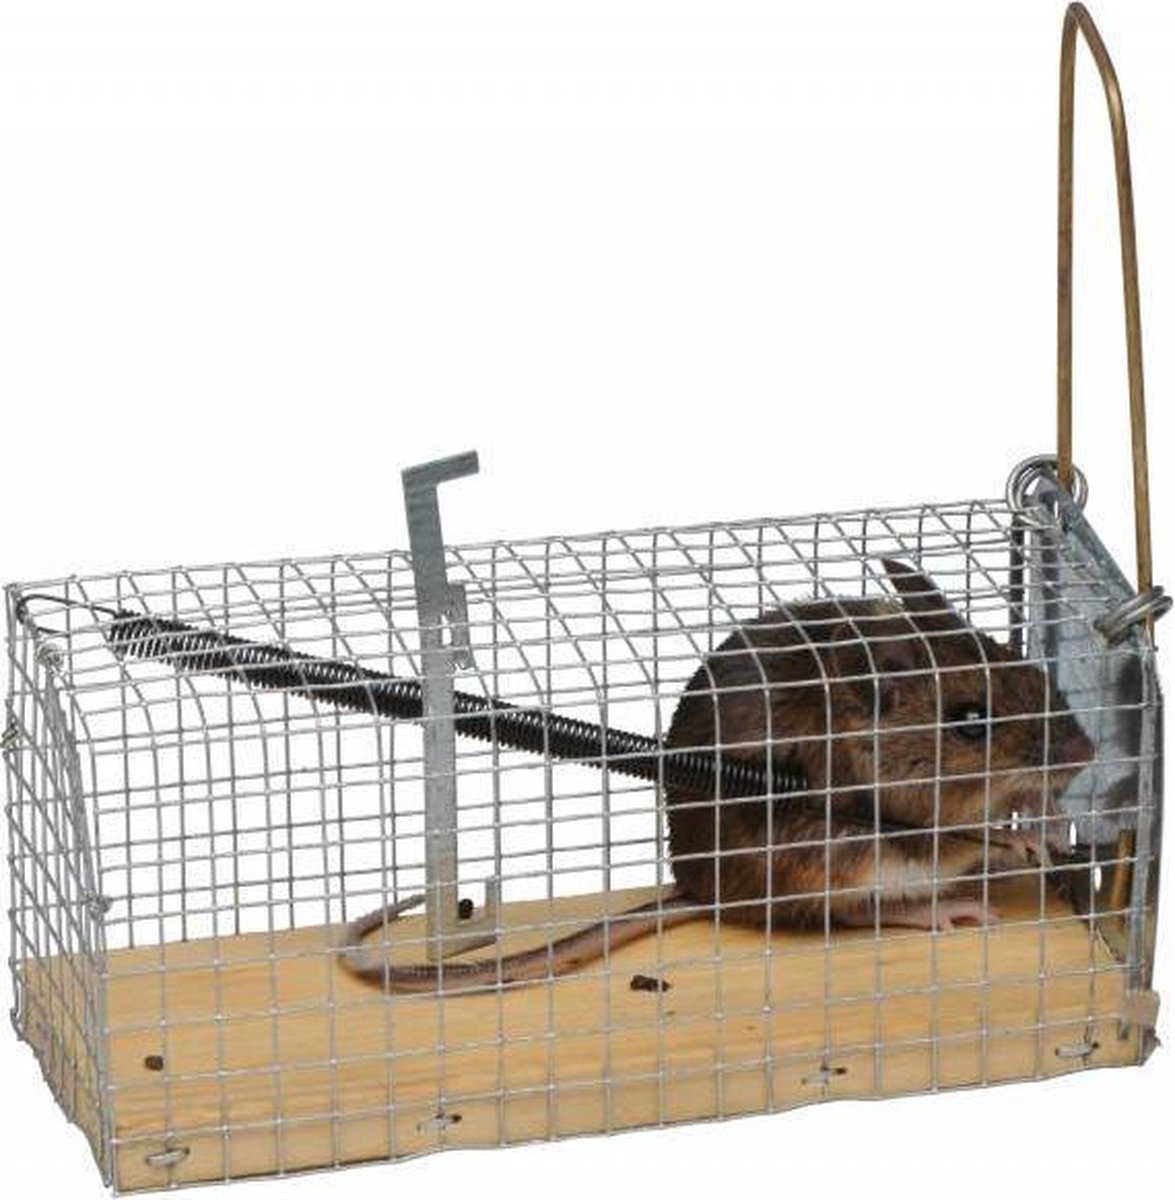 Plancher en bois de la cage de la souris